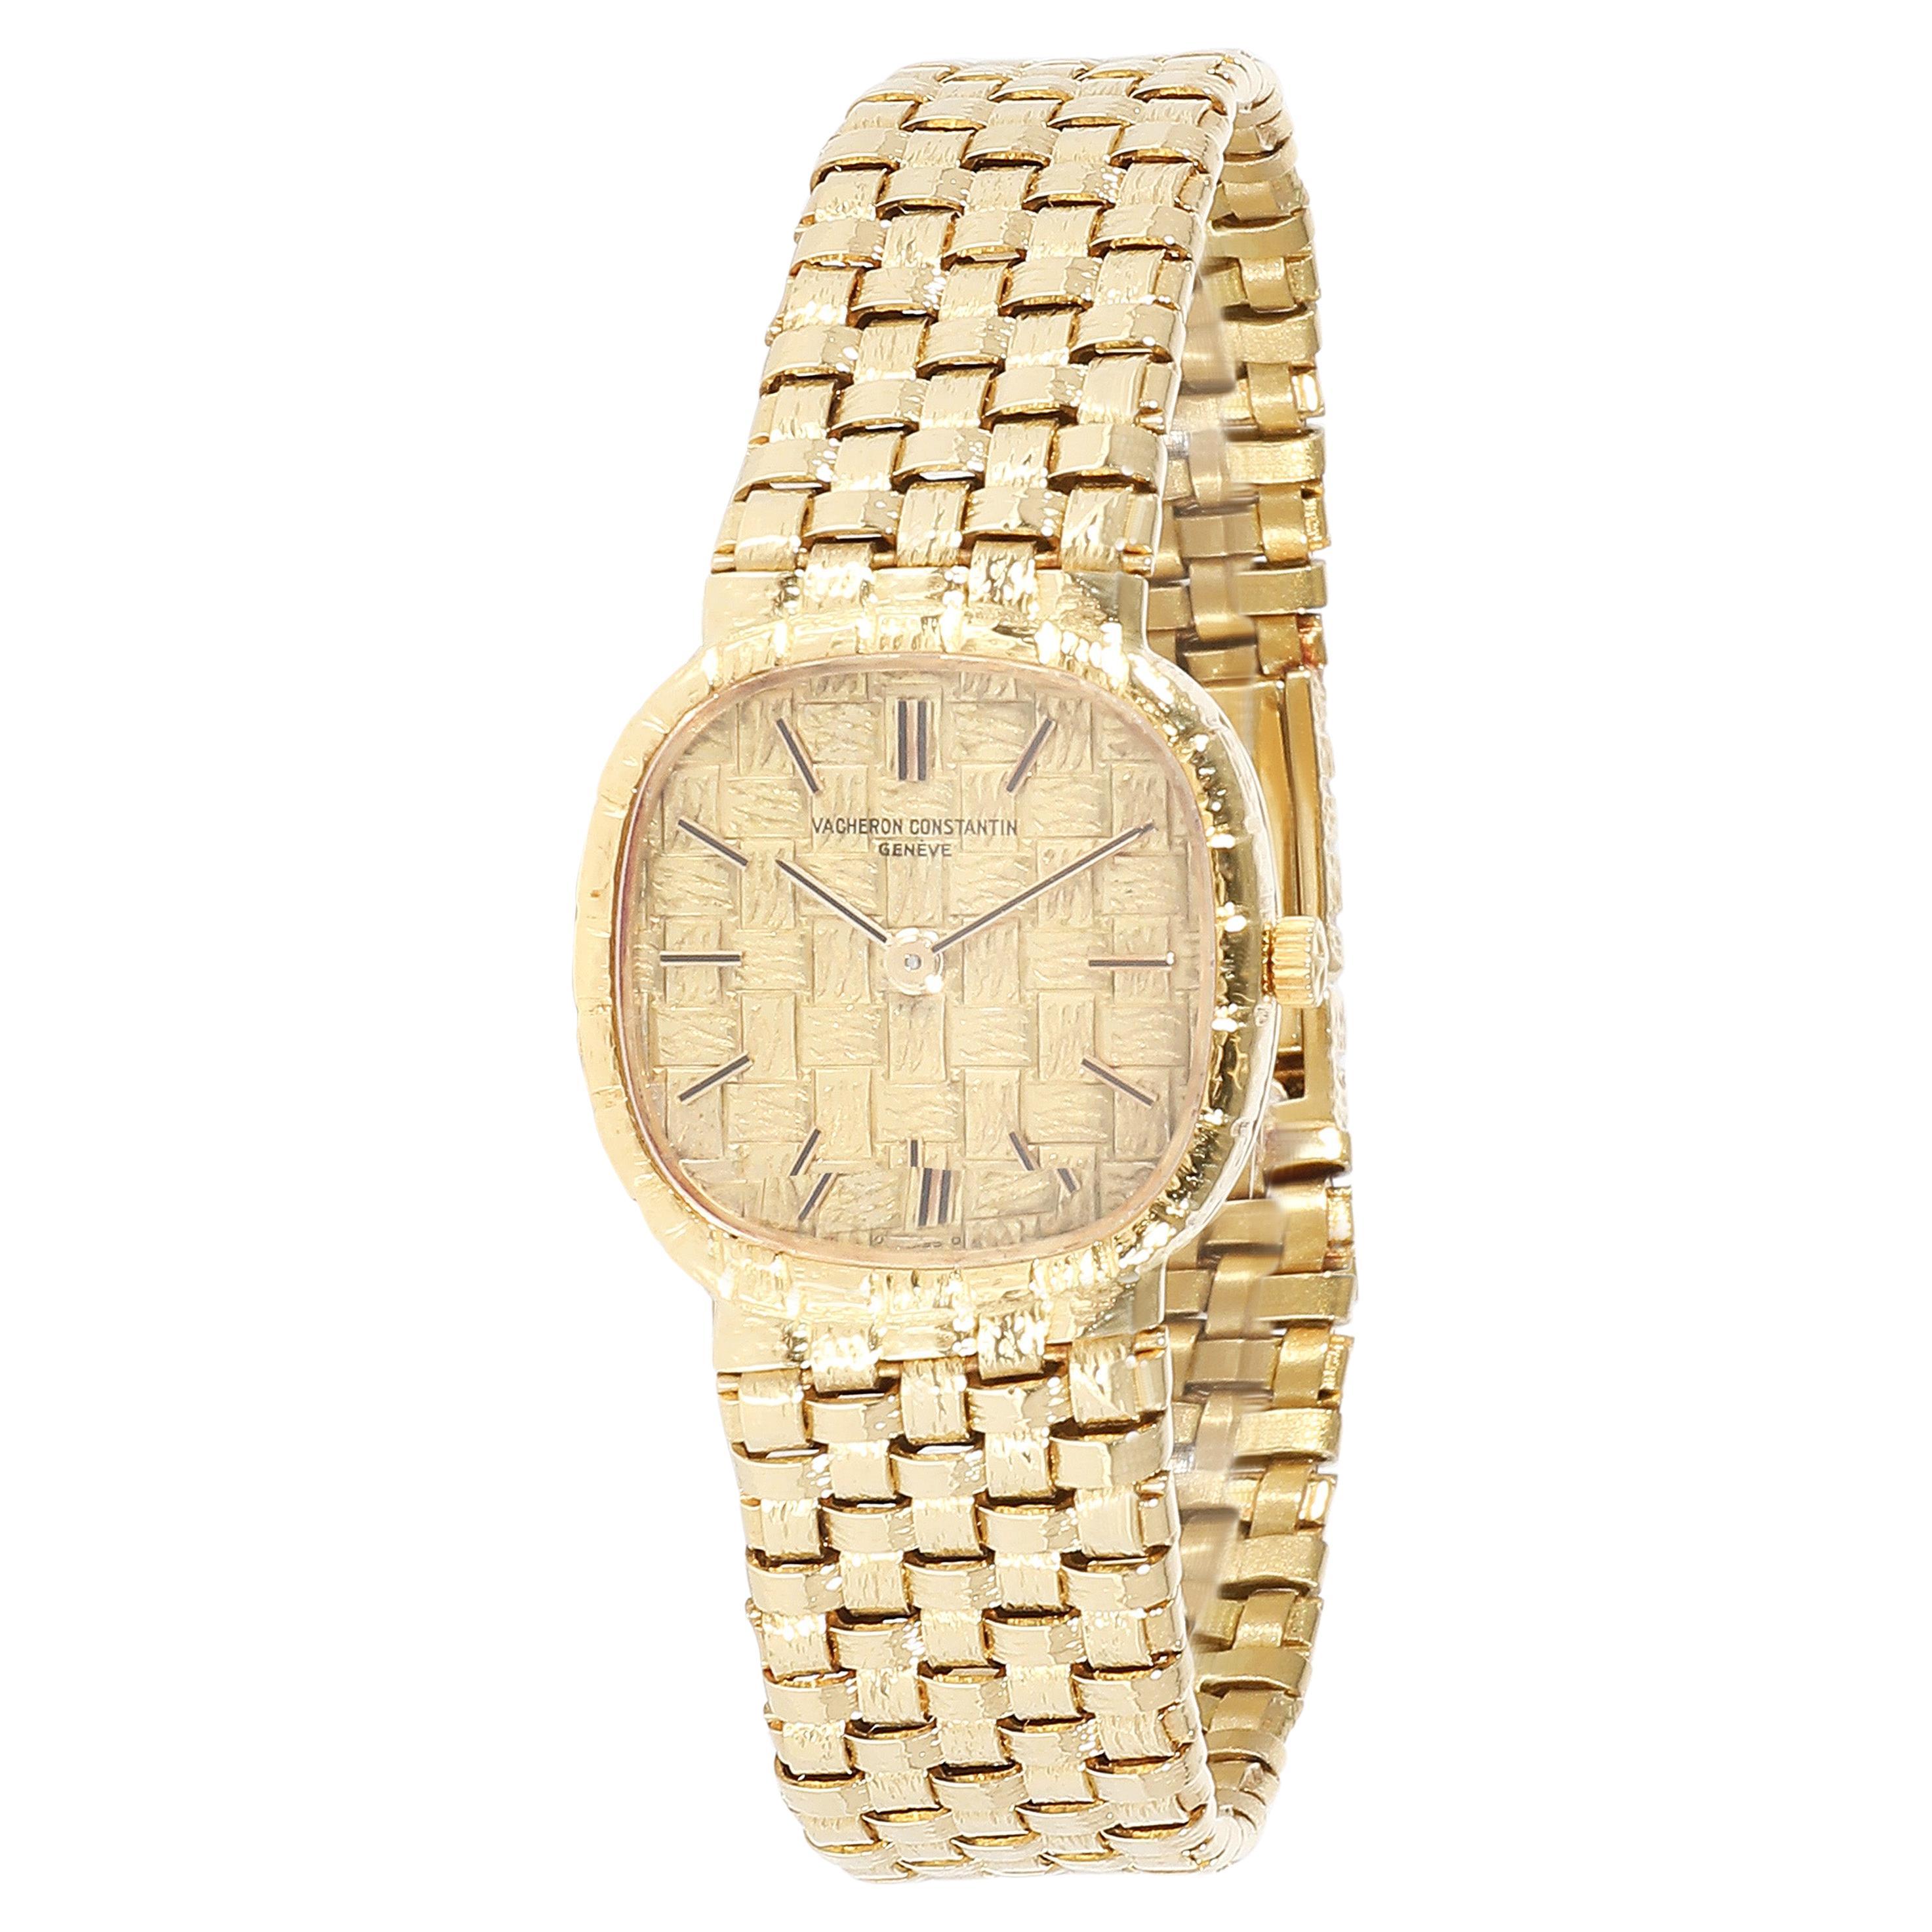 Vacheron Constantin Classique 13004 Women's Watch in 18kt Yellow Gold